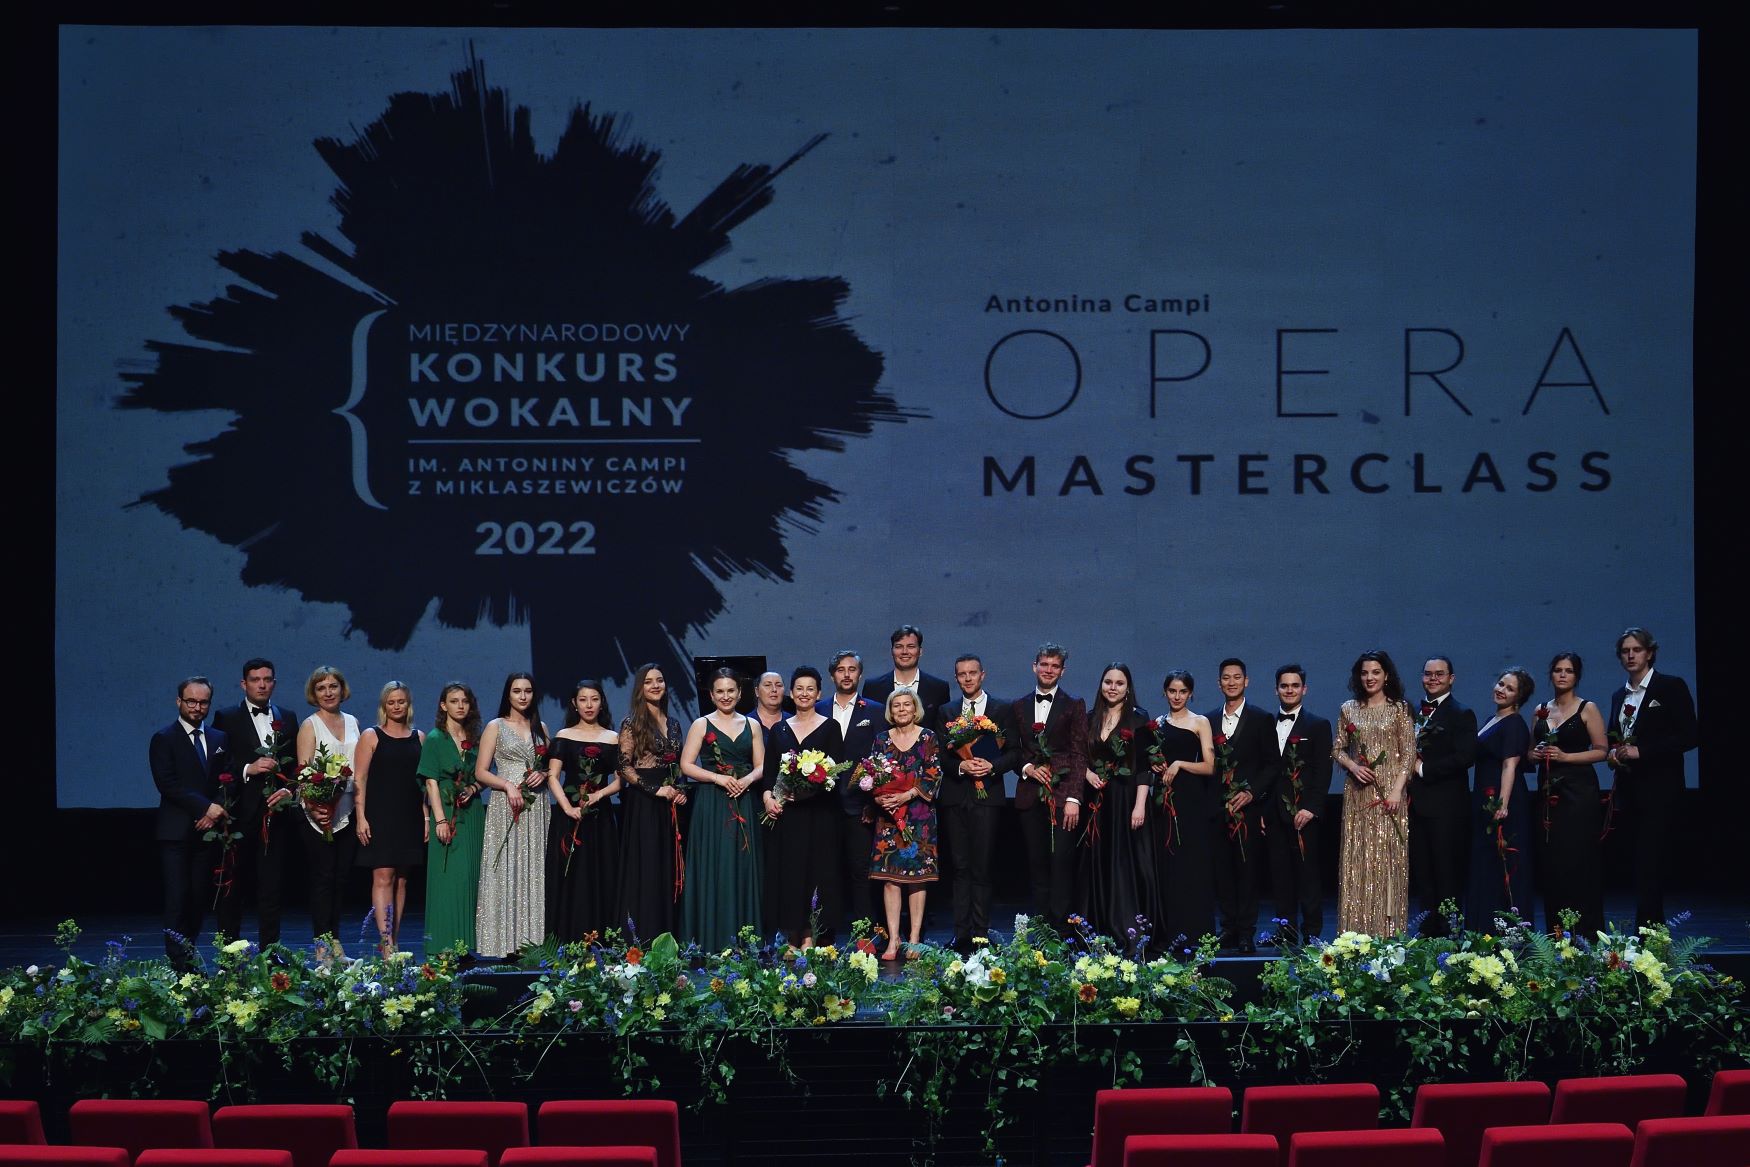 Po koncercie uczestników Antonina Campi Opera Masterclass 2022 © Przemysław Gąbka